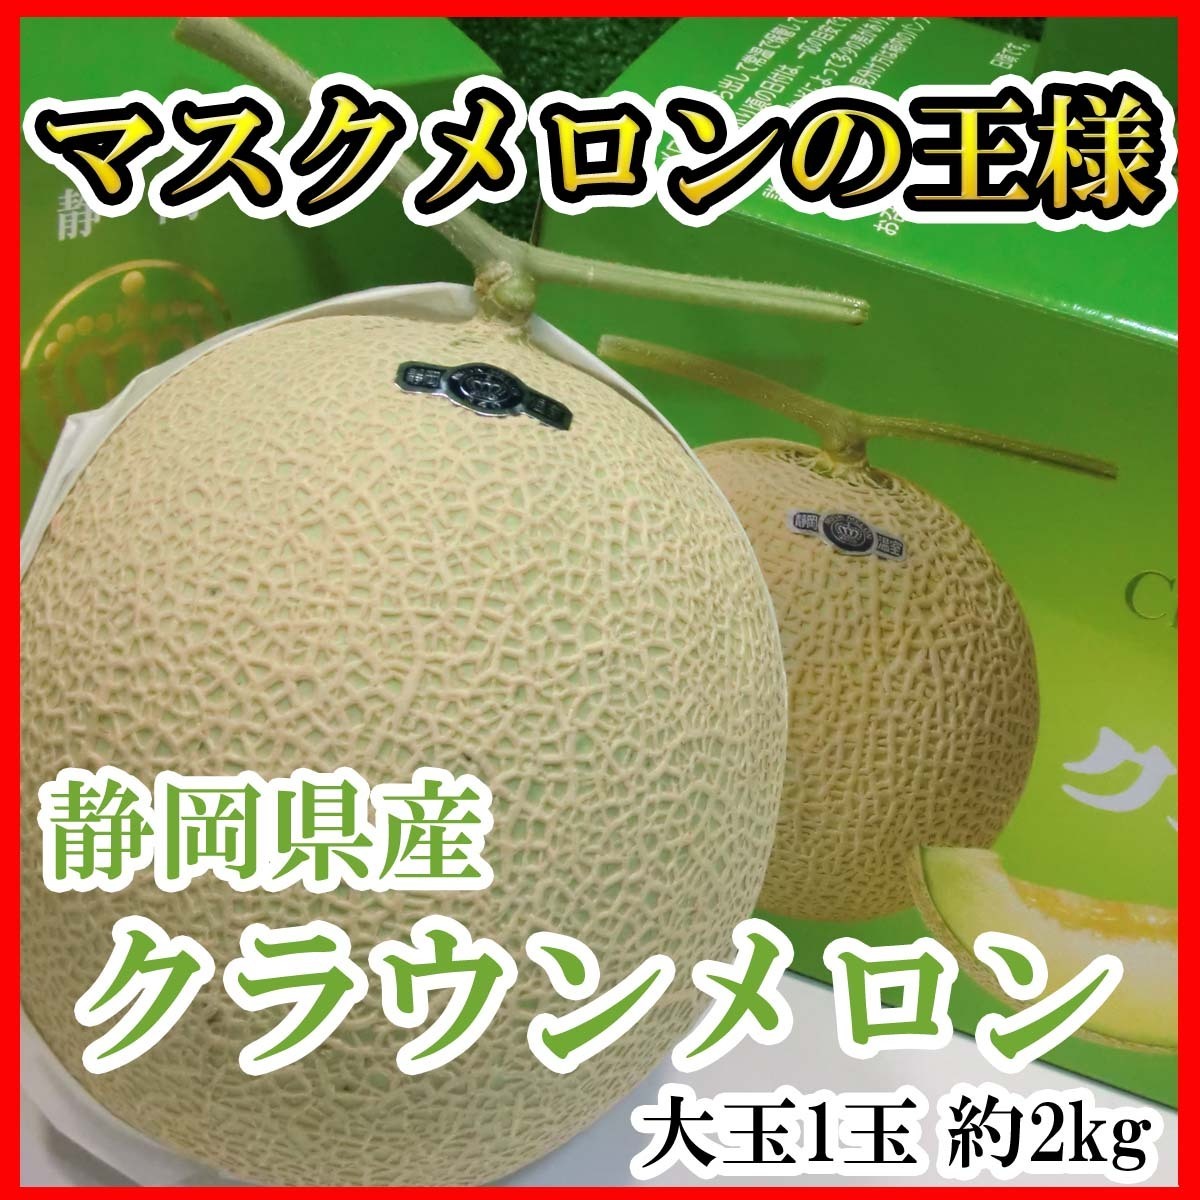 [Good] Shizuoka производство Crown дыня супер большой шар 1 шар примерно 2kg несессер ввод предварительный заказ 